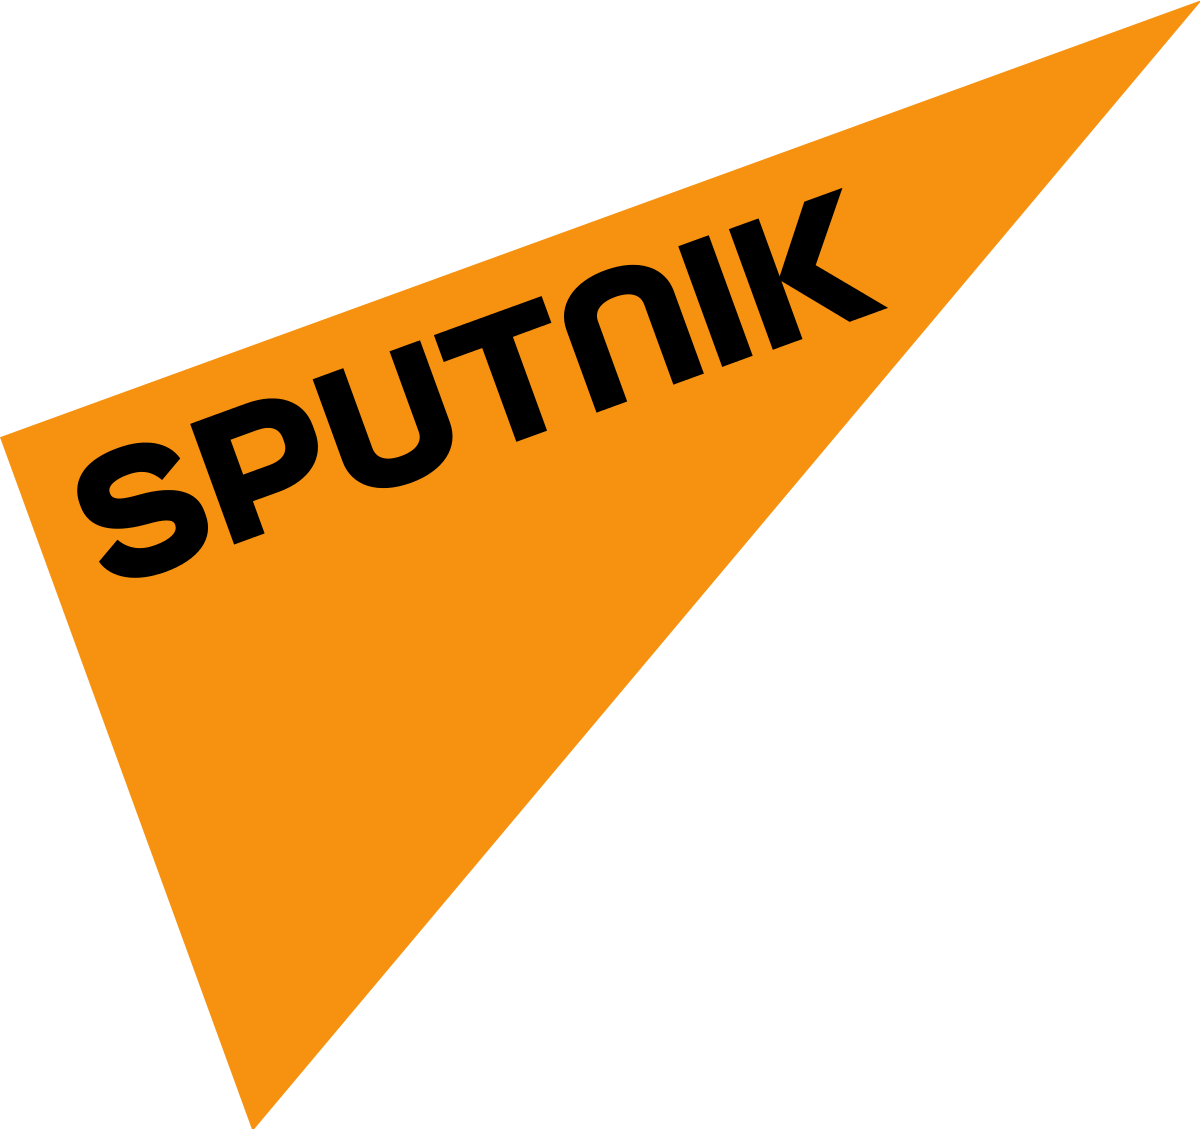 Sputnik_logo.svg - Global Americans